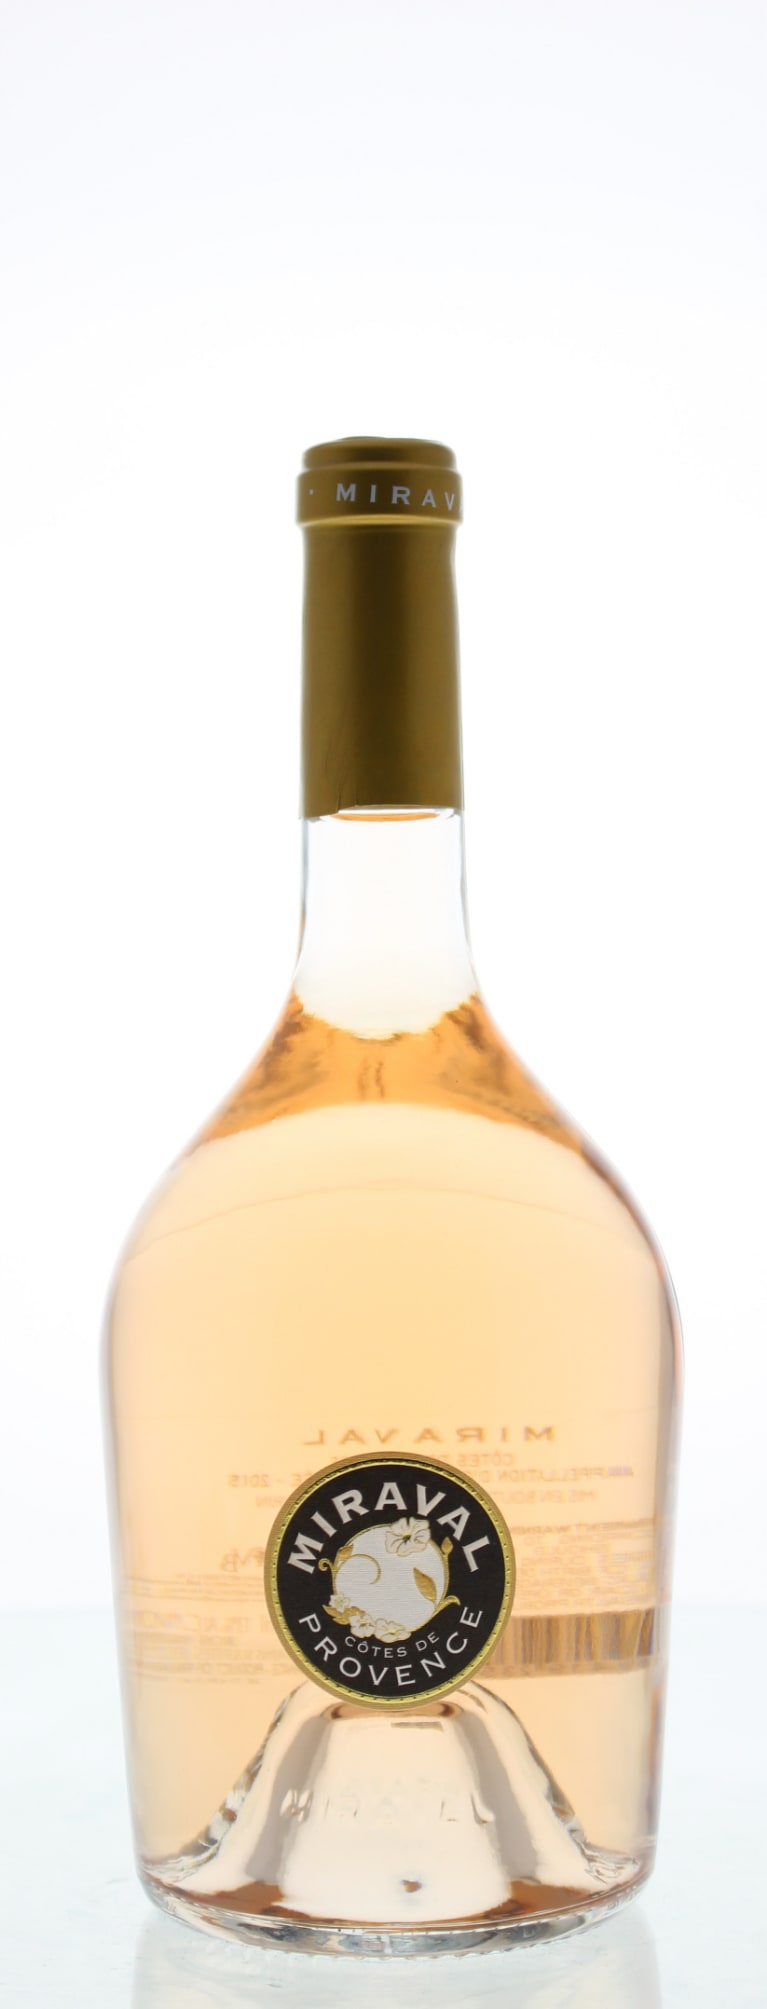 朱莉-皮特夫妇发布2014年份桃红葡萄酒